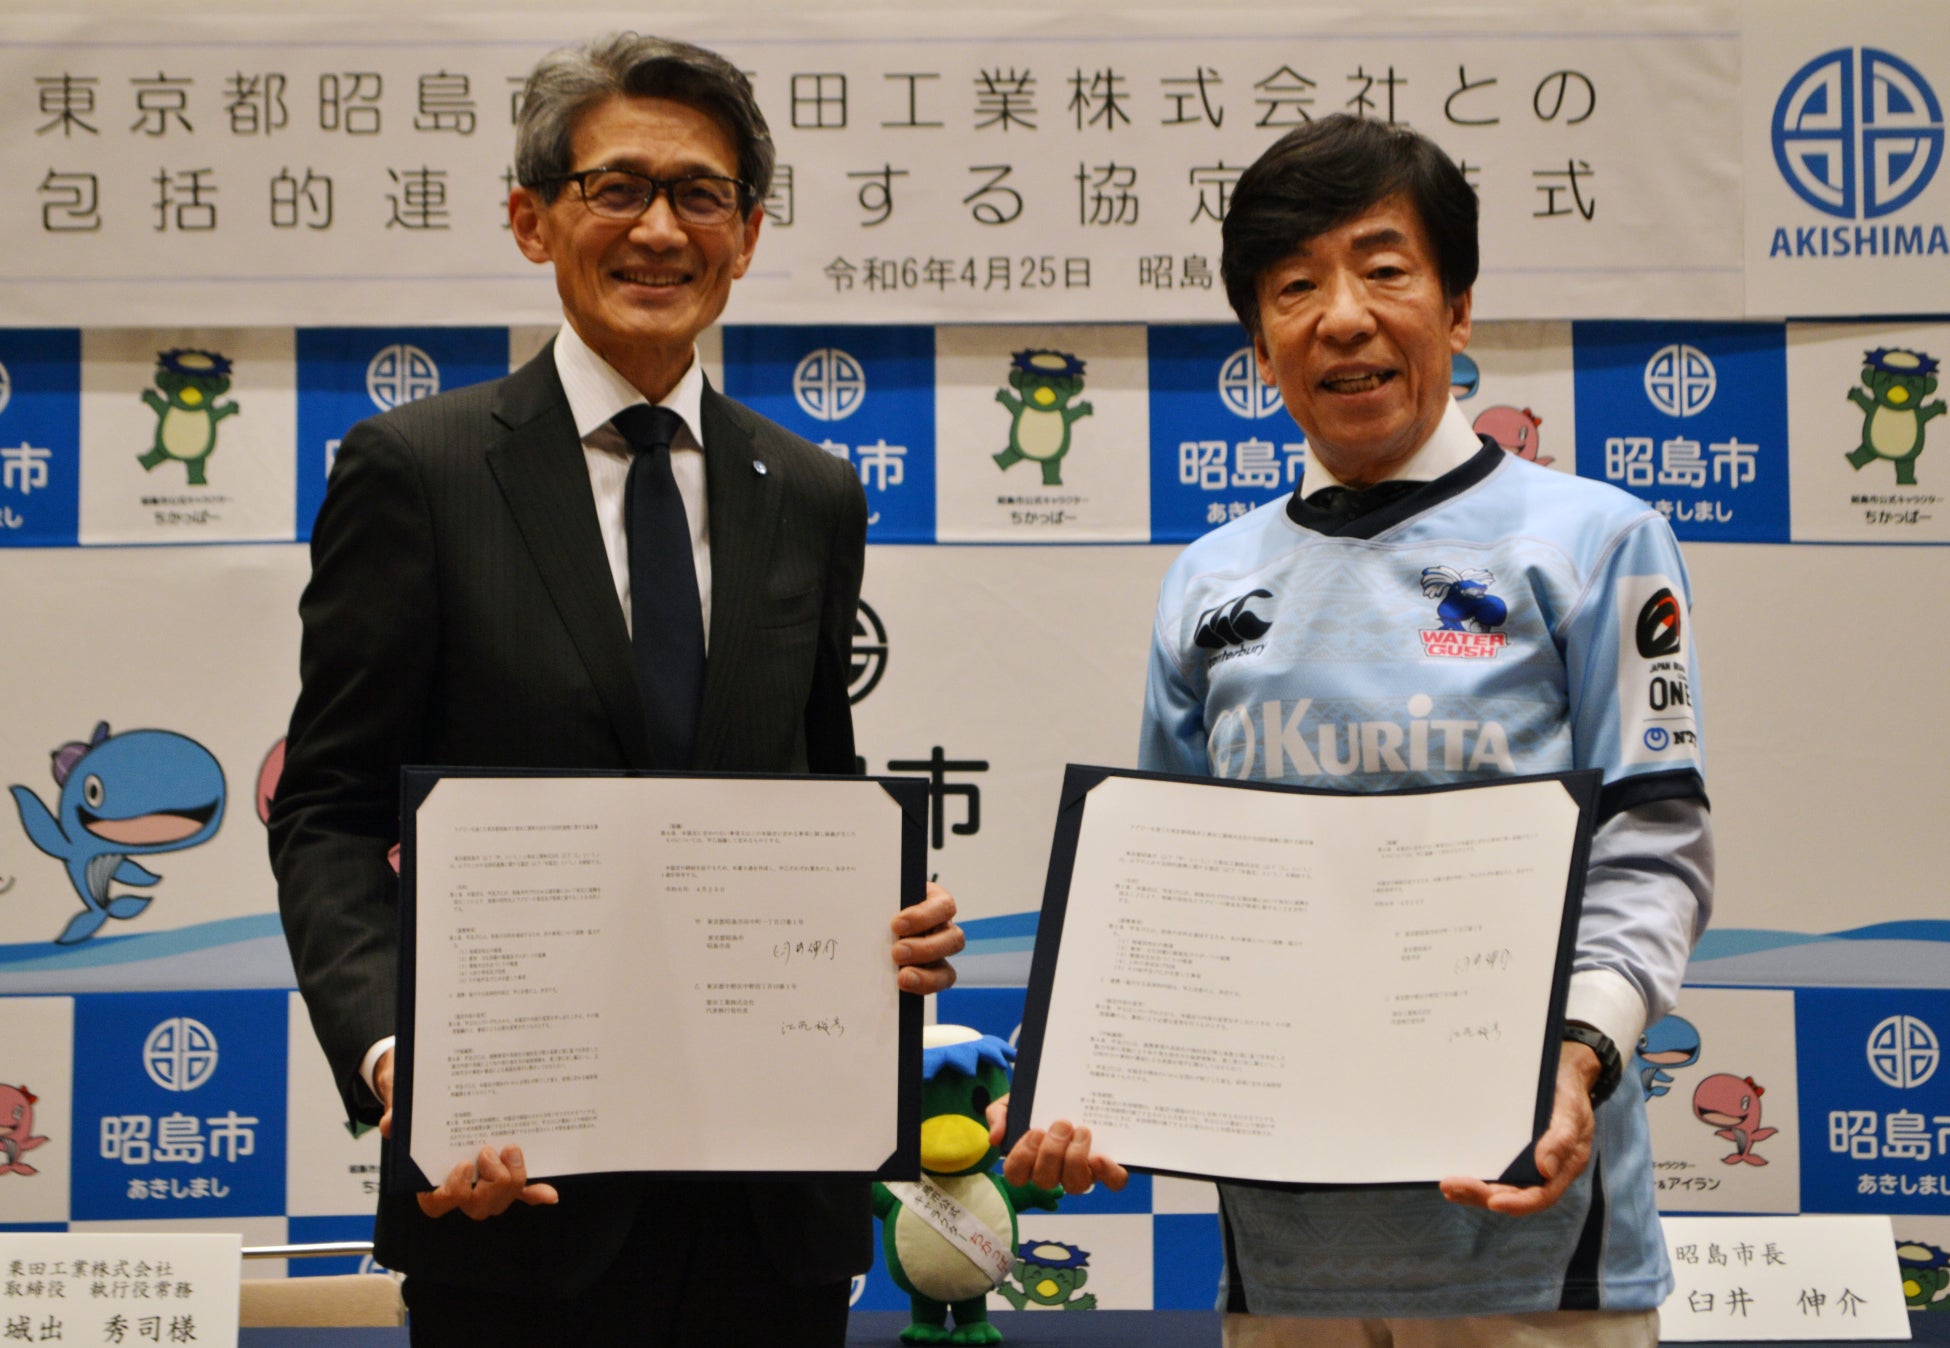 東京都昭島市とラグビー活動を通じた包括的連携協定を締結